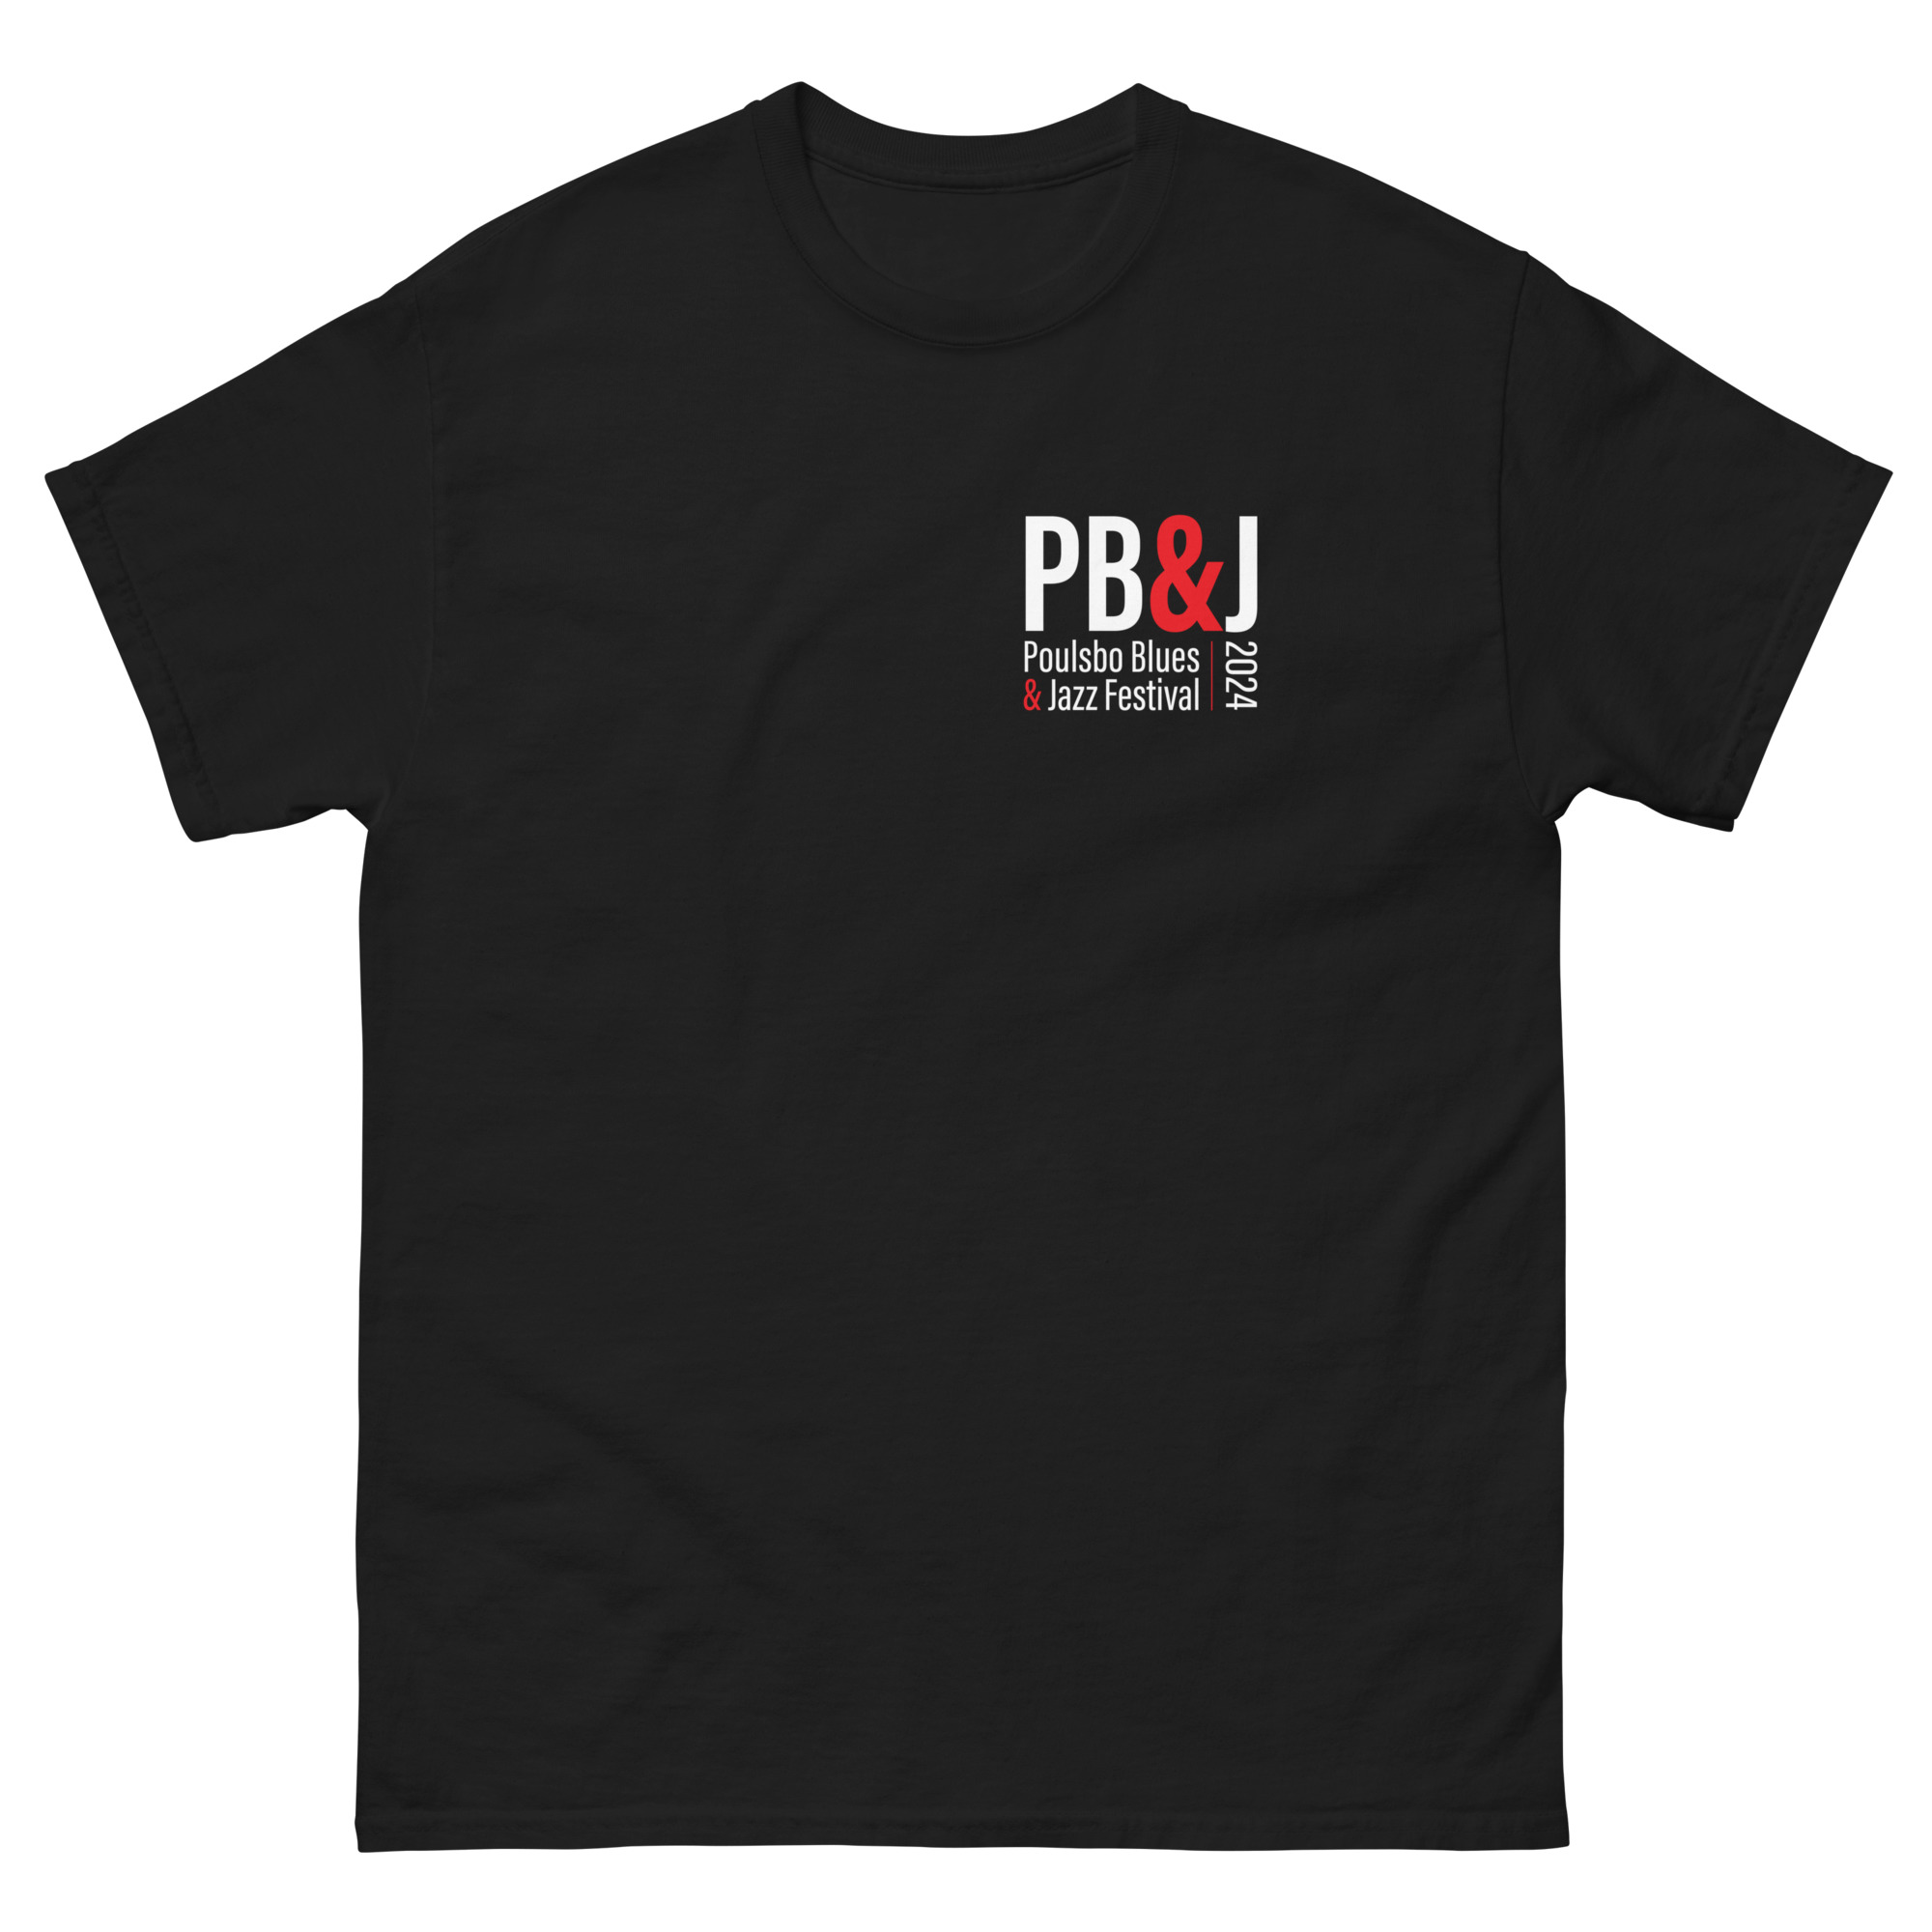 PB&J T-Shirt - Black - 1905 Gear